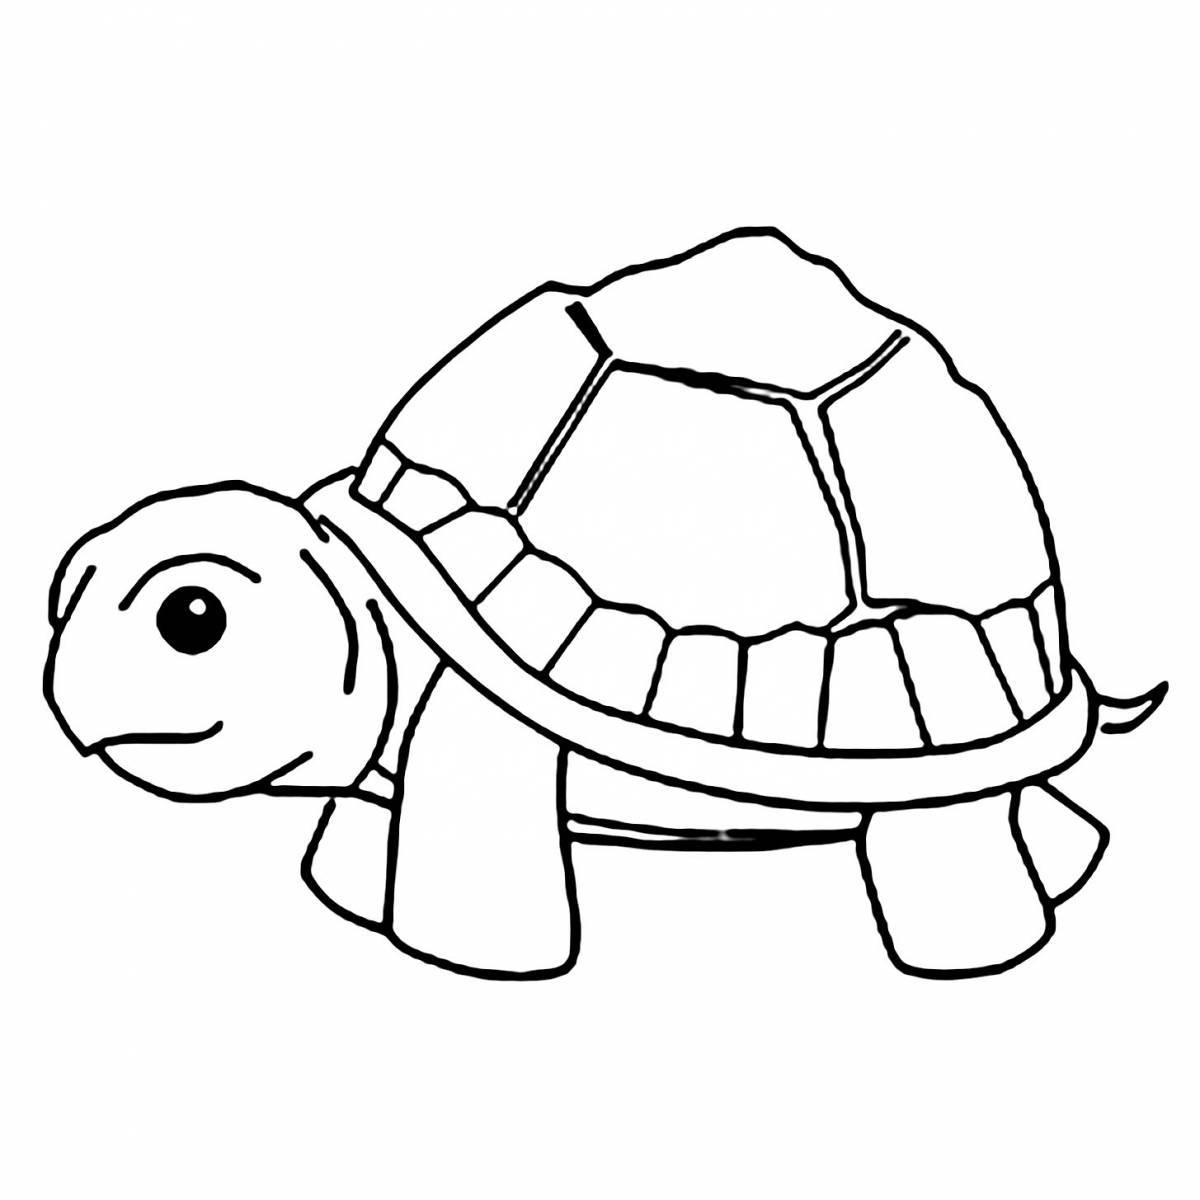 Волшебная черепаха-раскраска для детей